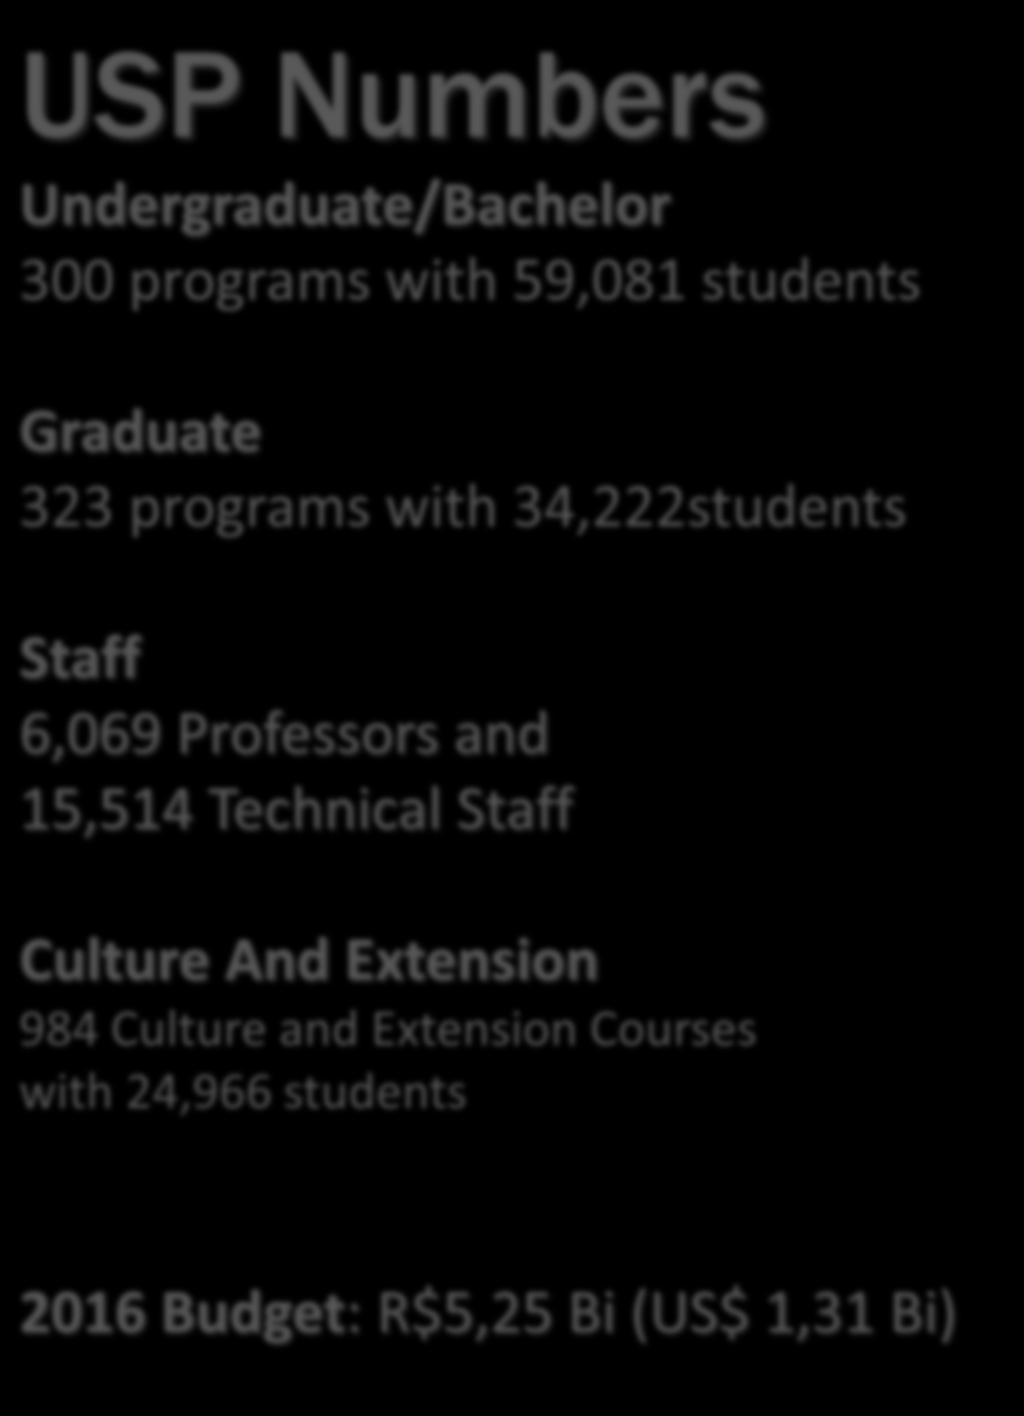 USP Numbers Undergraduate/Bachelor